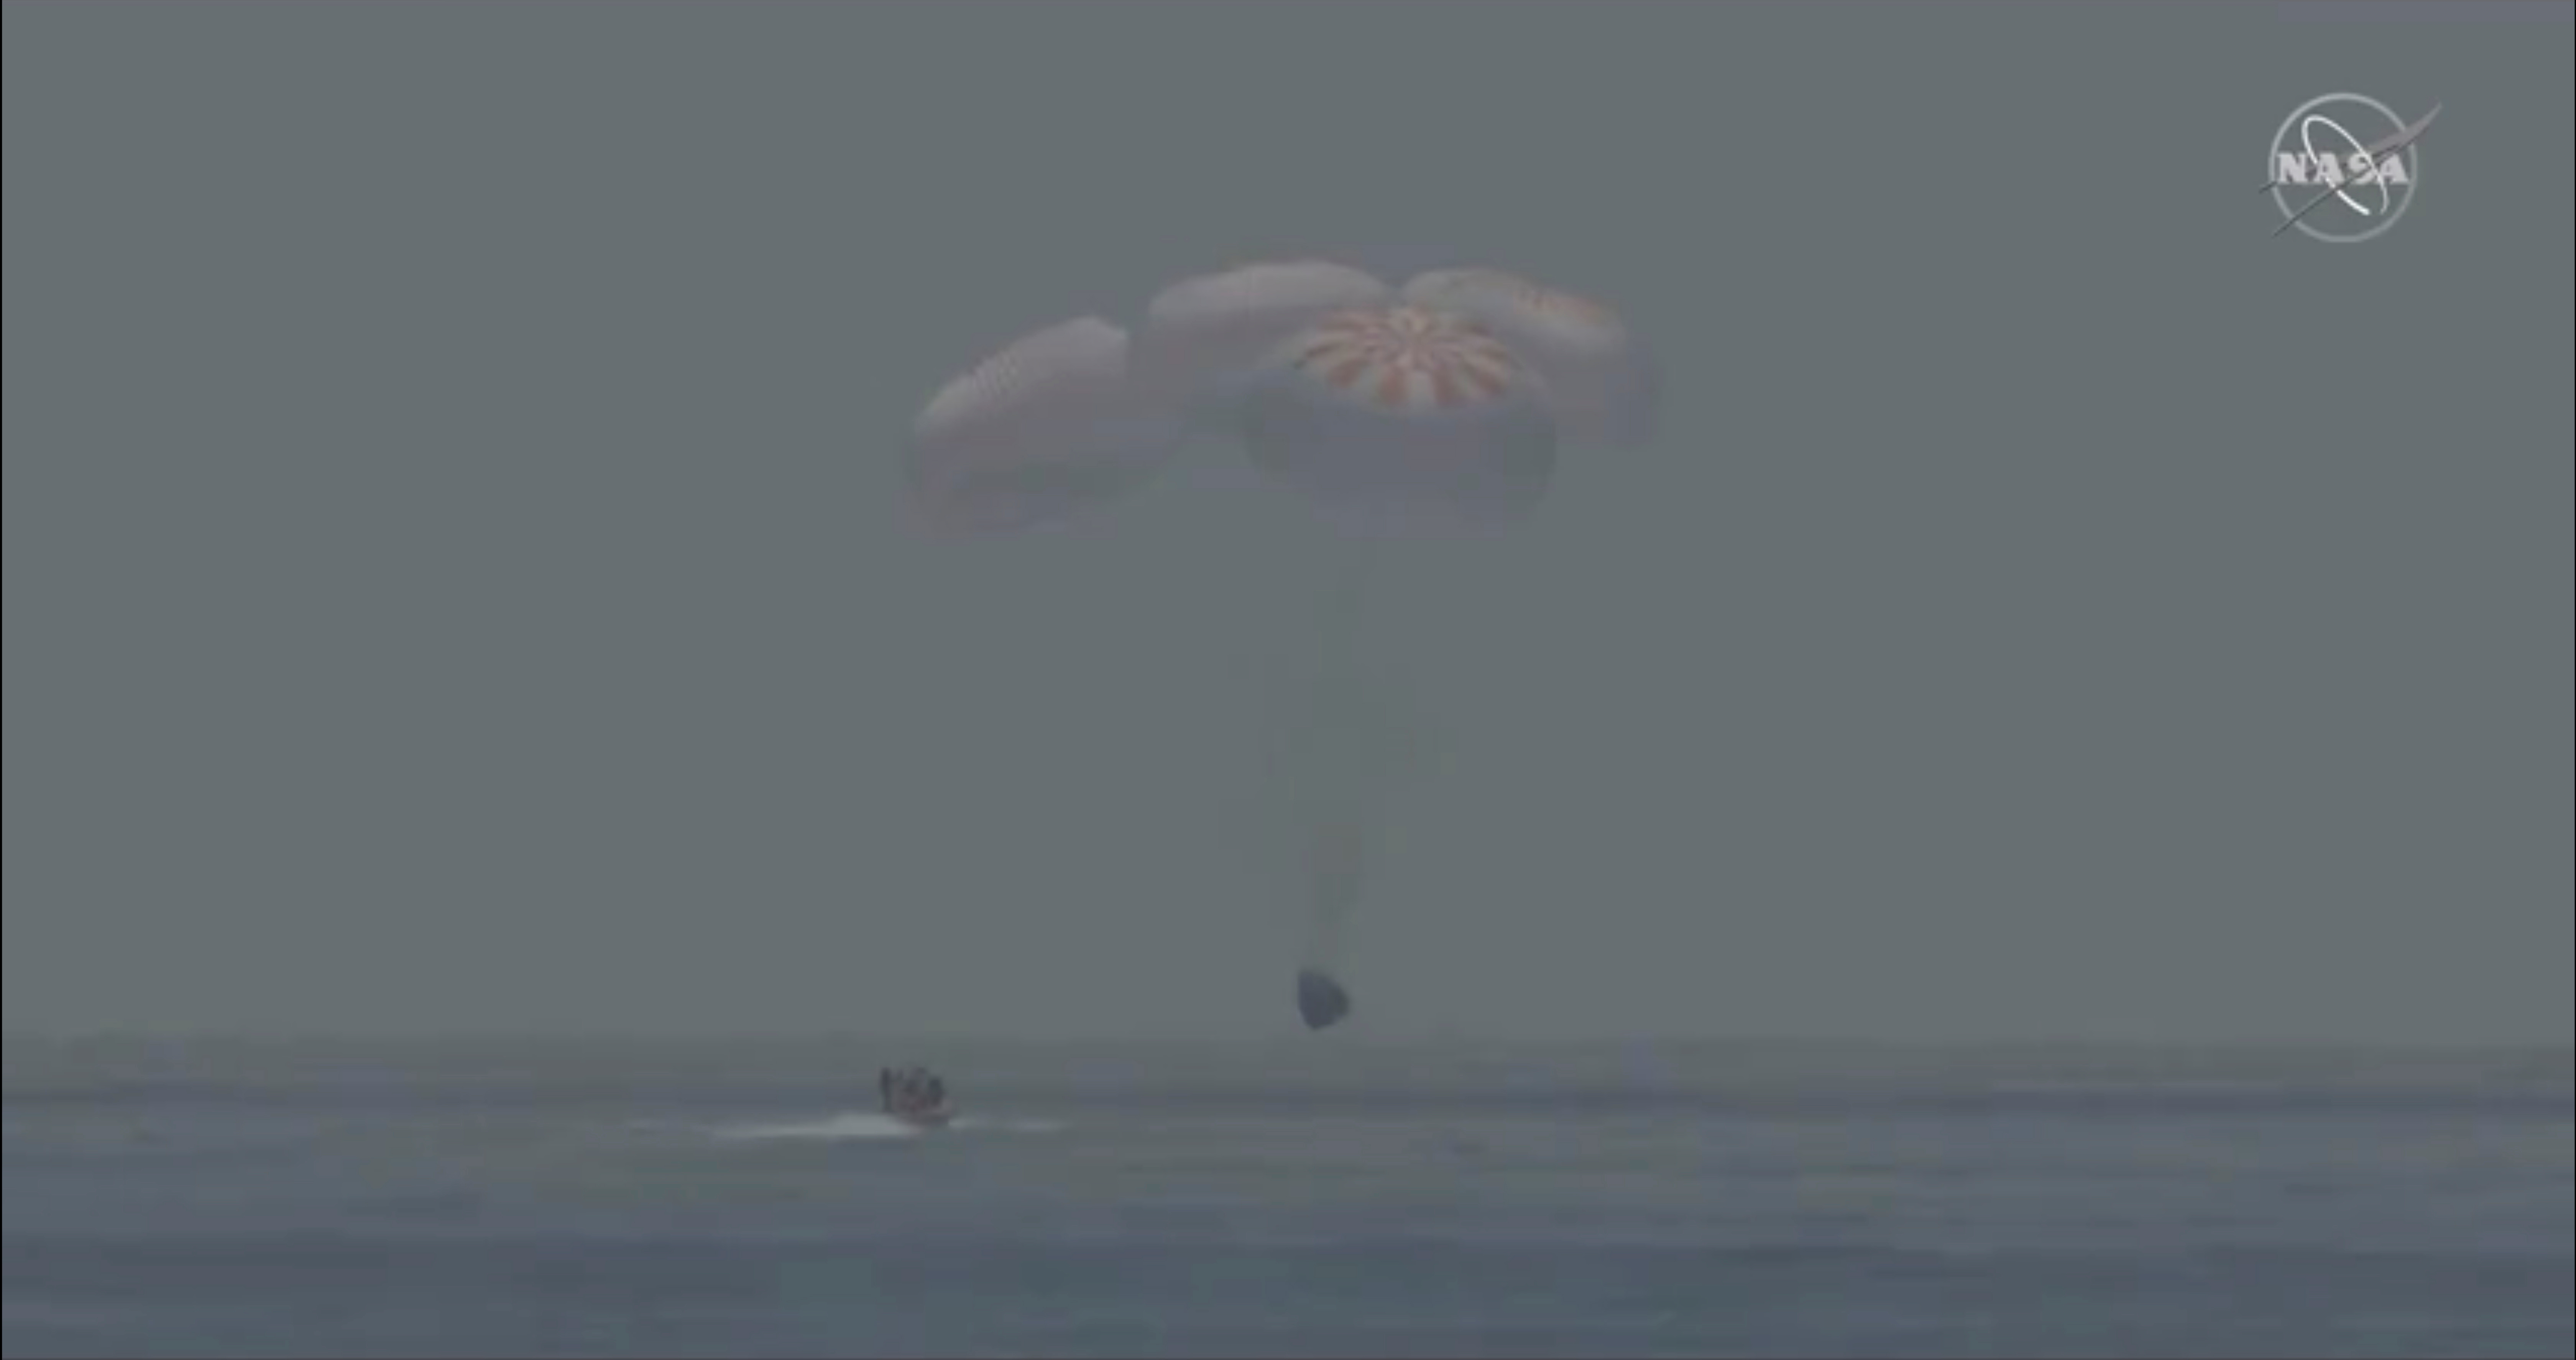 La cápsula de SpaceX Crew Dragon ameriza en el Golfo de México